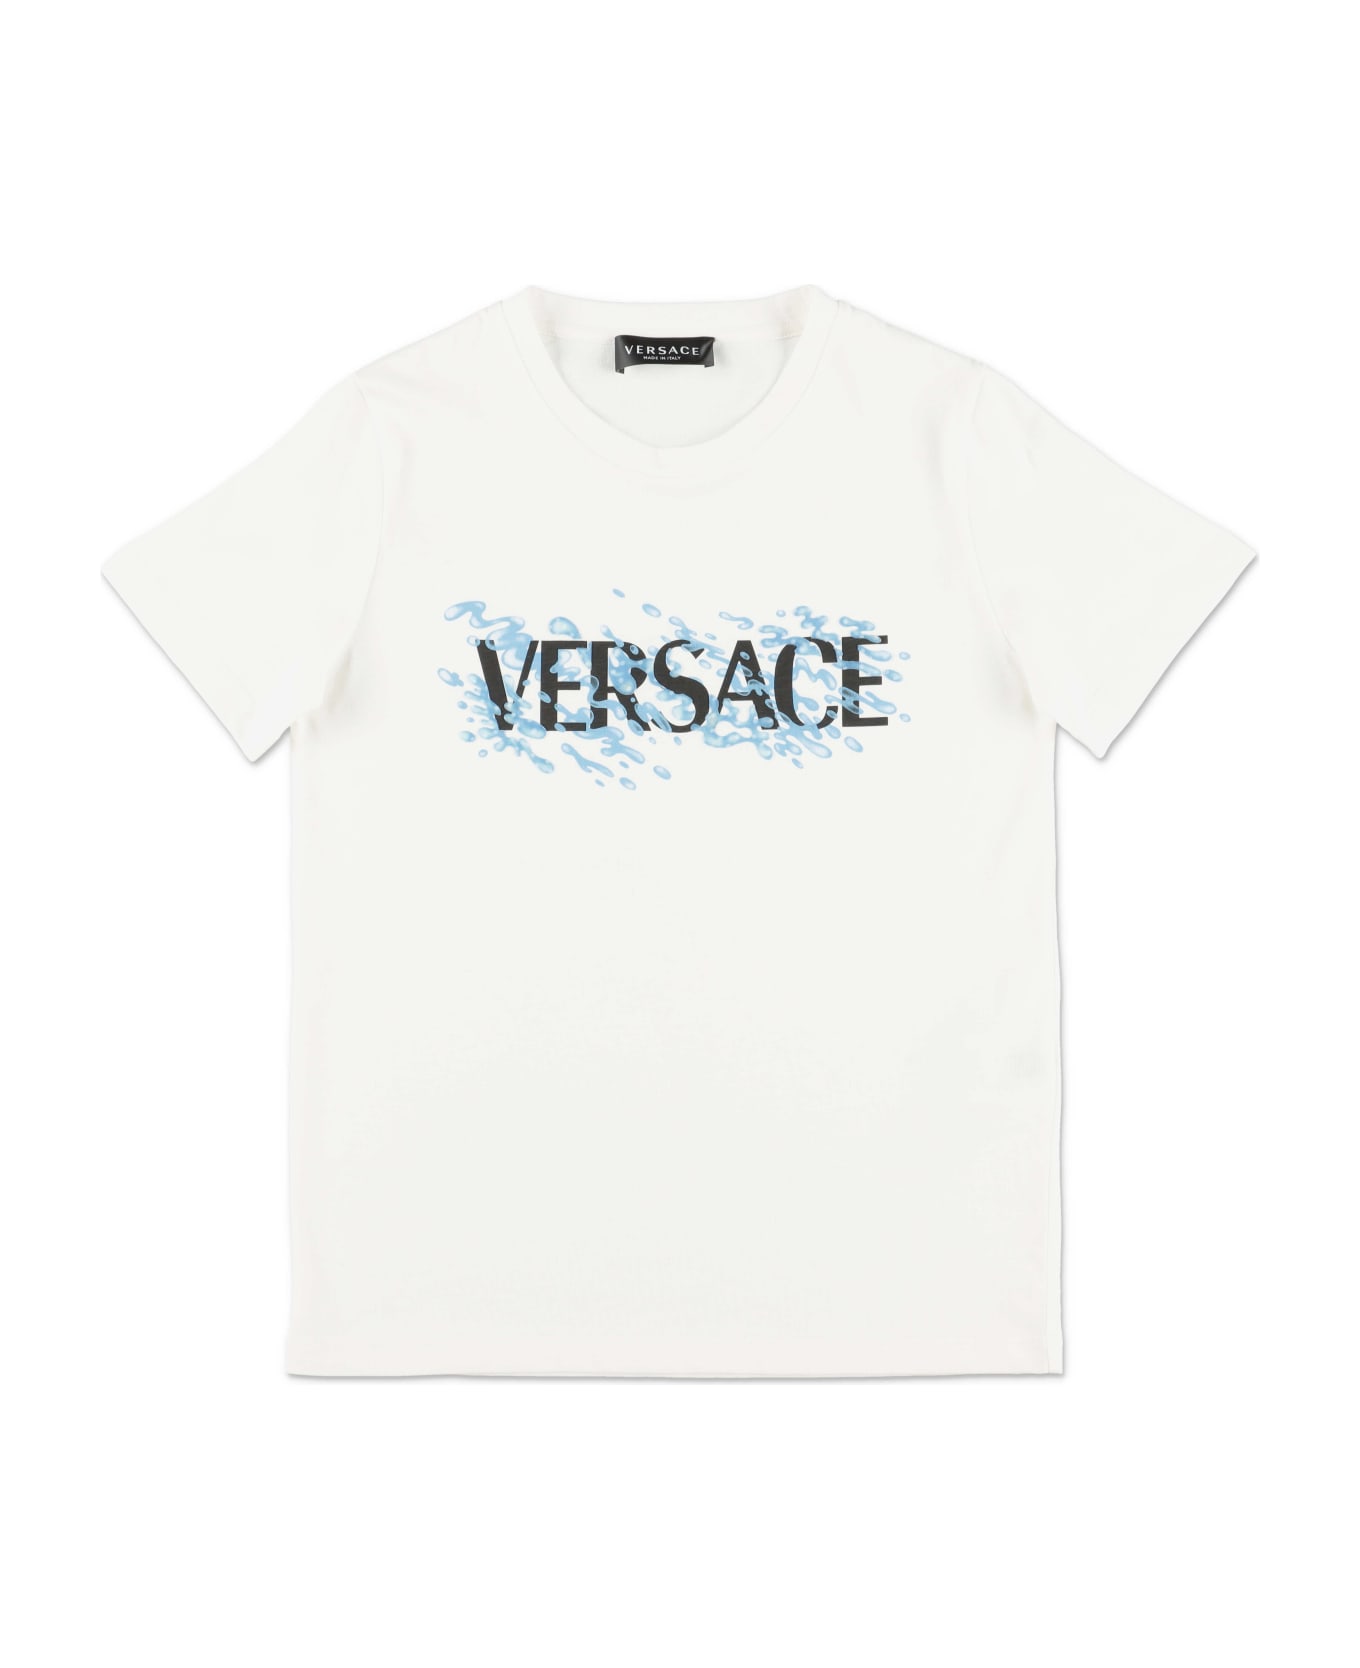 Young Versace T-shirt Bianca In Jersey Di Cotone Bambino - Polo Ralph Lauren Berretto blu reale marrone chiaro melone nero bianco